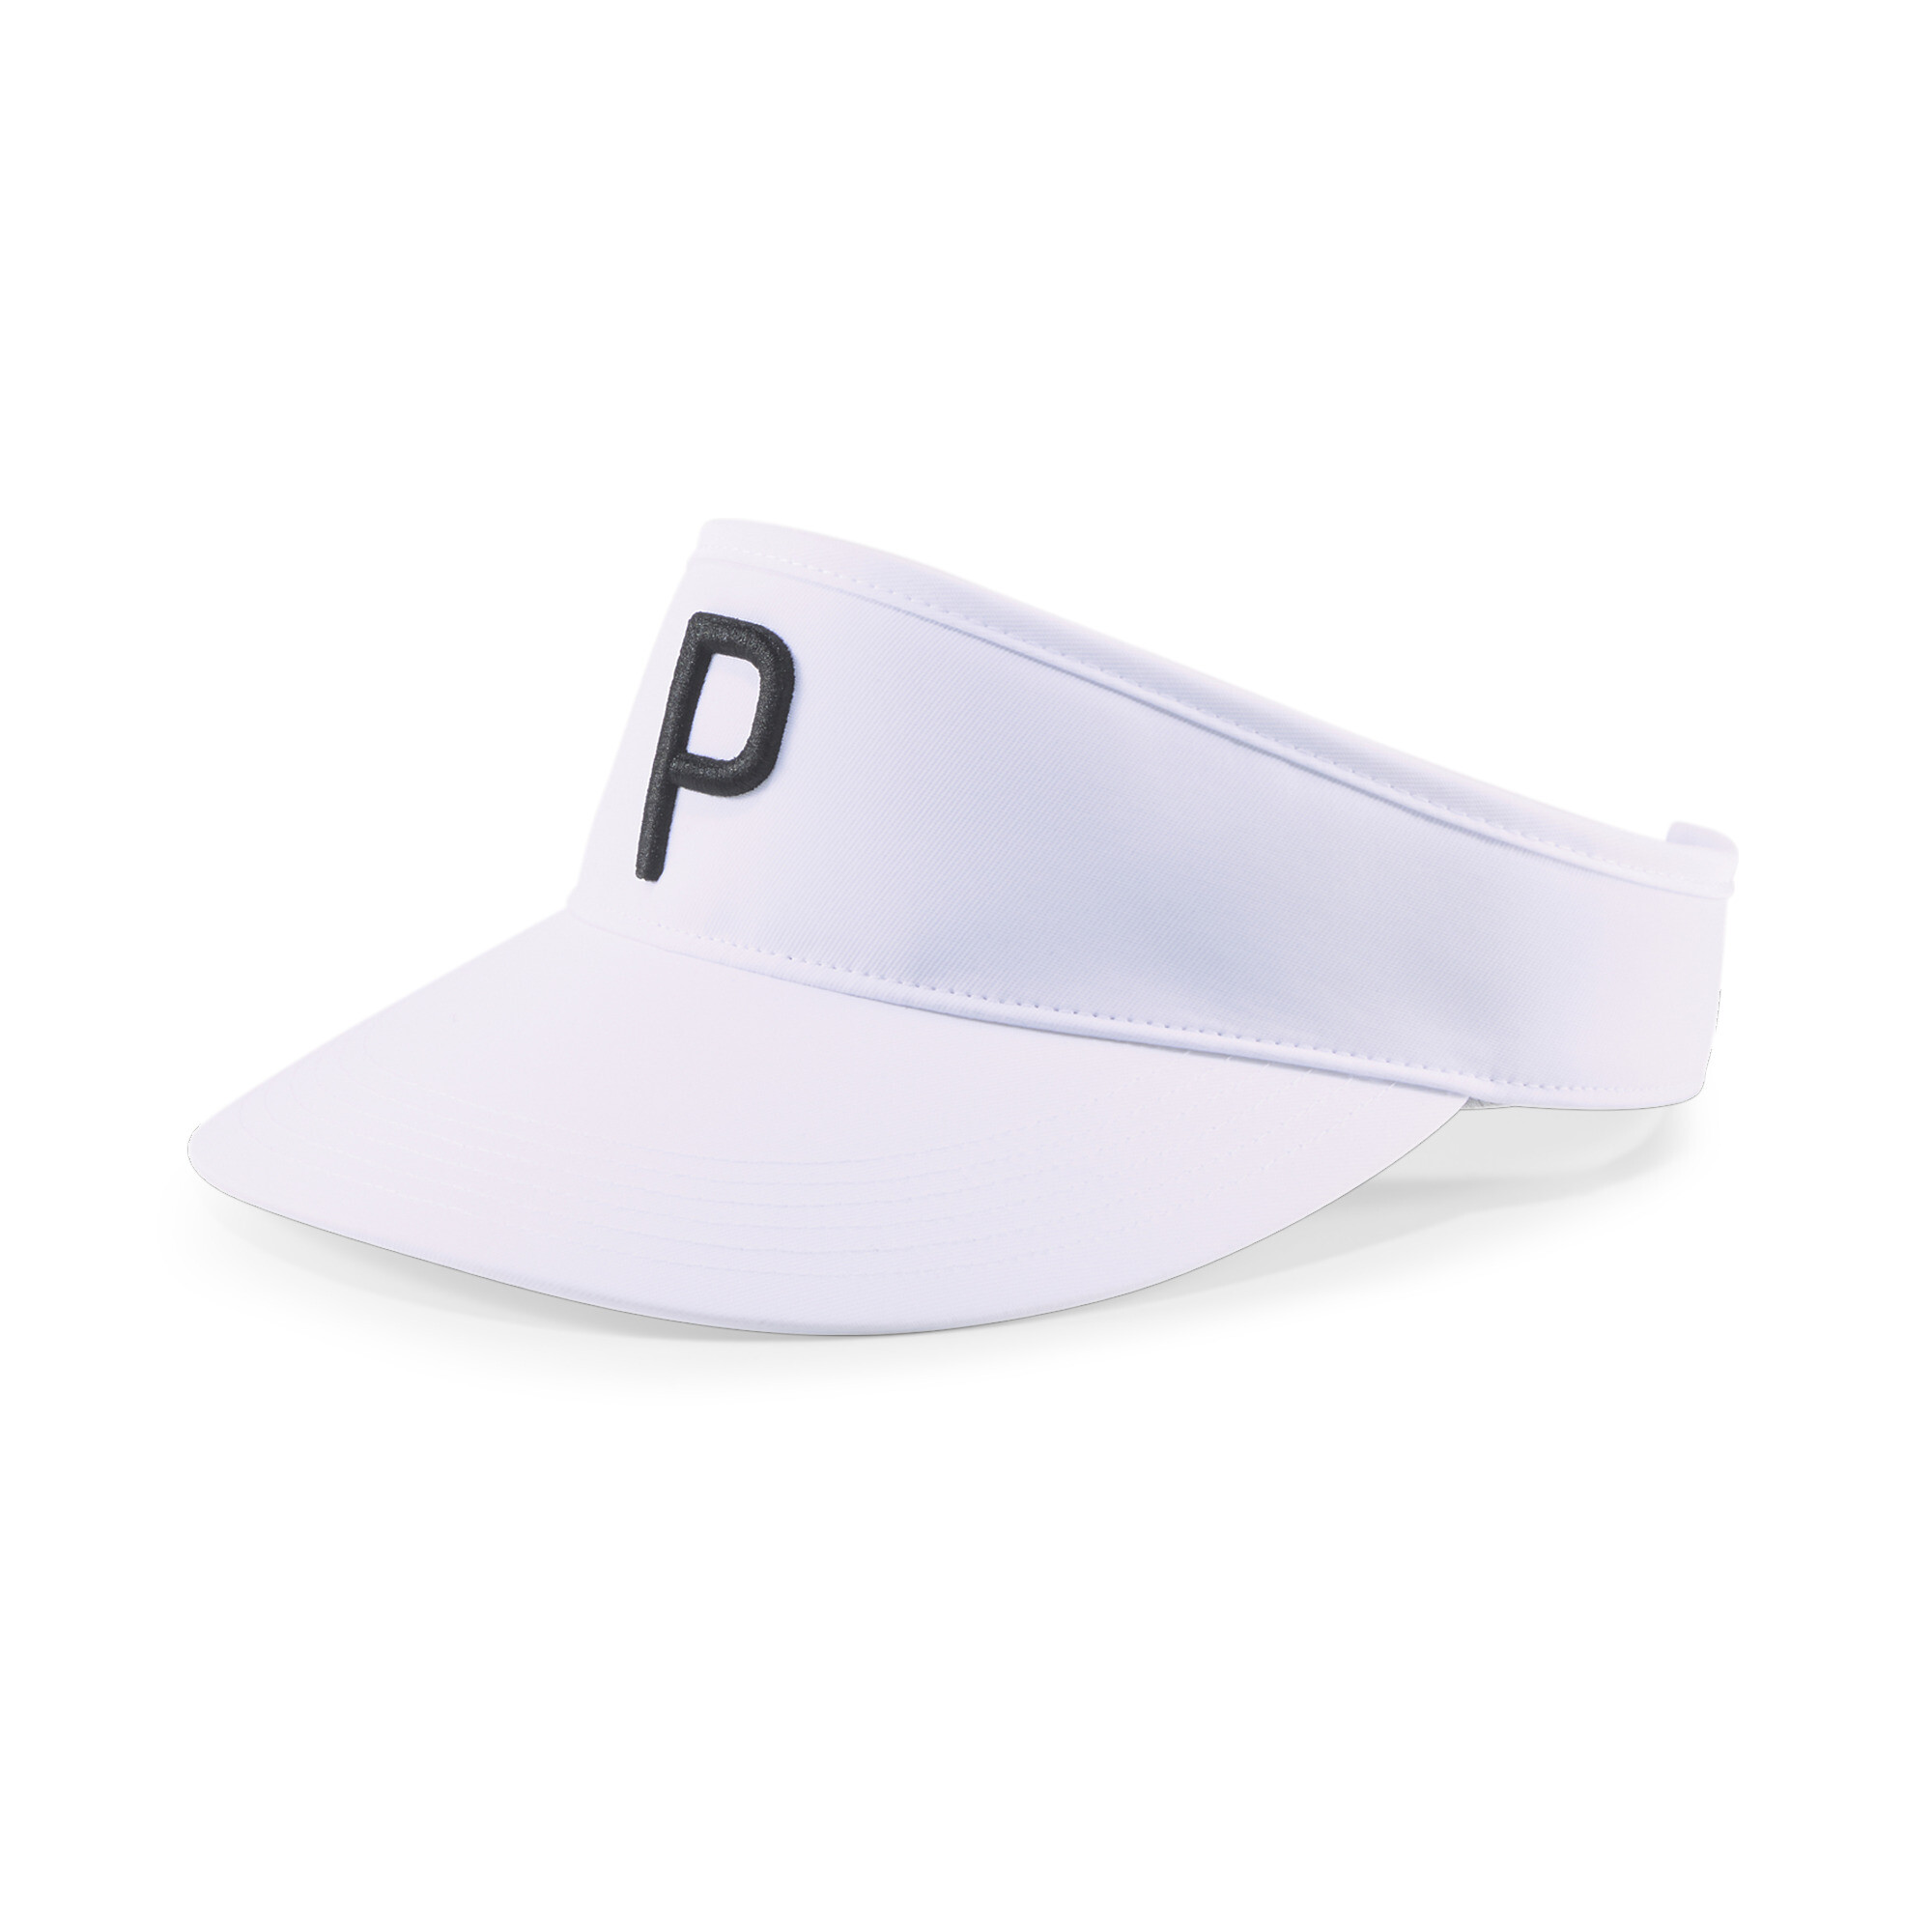 ＜プーマ公式通販＞ プーマ メンズ ゴルフ P アジャスタブル バイザー メンズ Bright White-Puma Black ｜PUMA.com